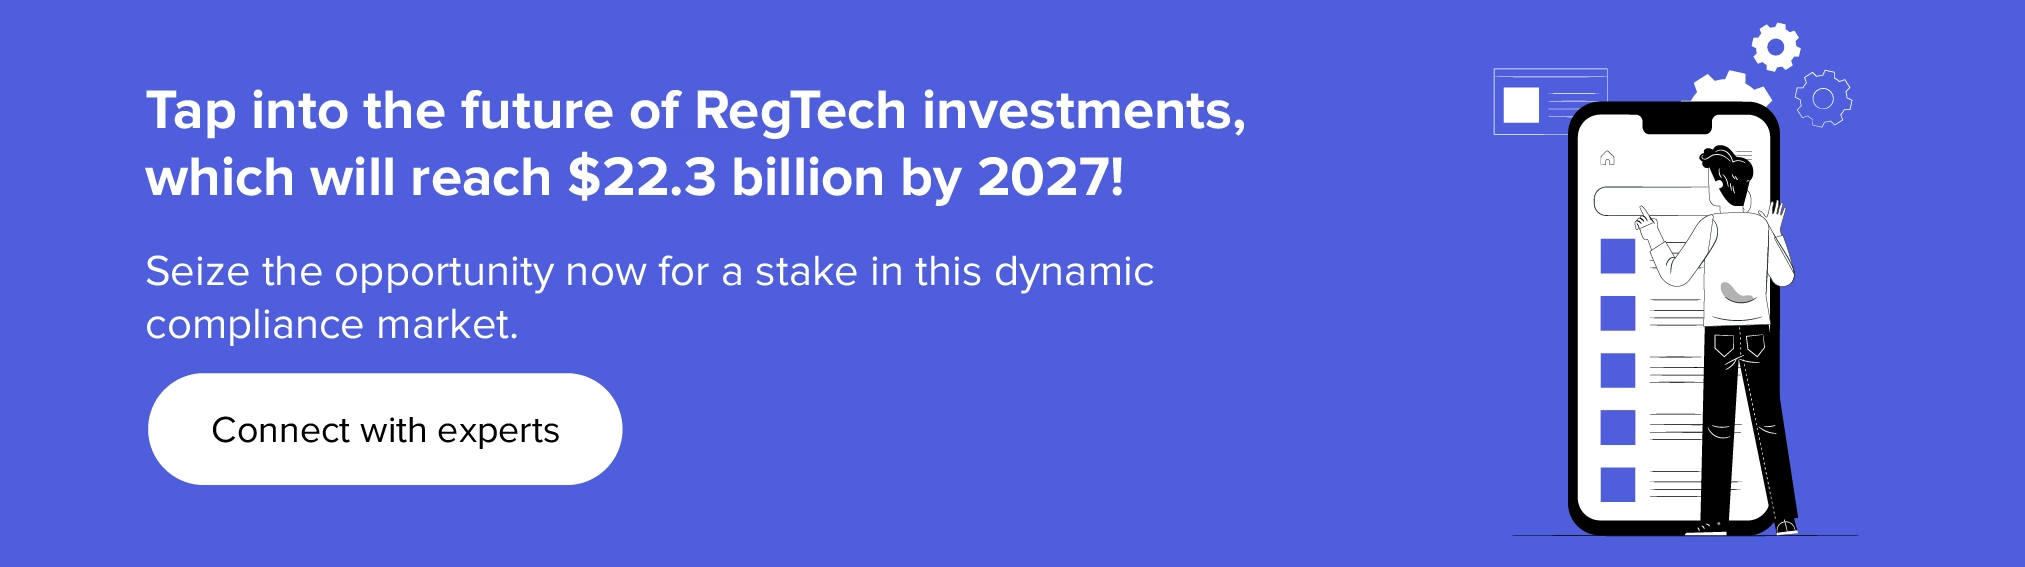 Aproveche el futuro de las inversiones en RegTech con nuestros expertos